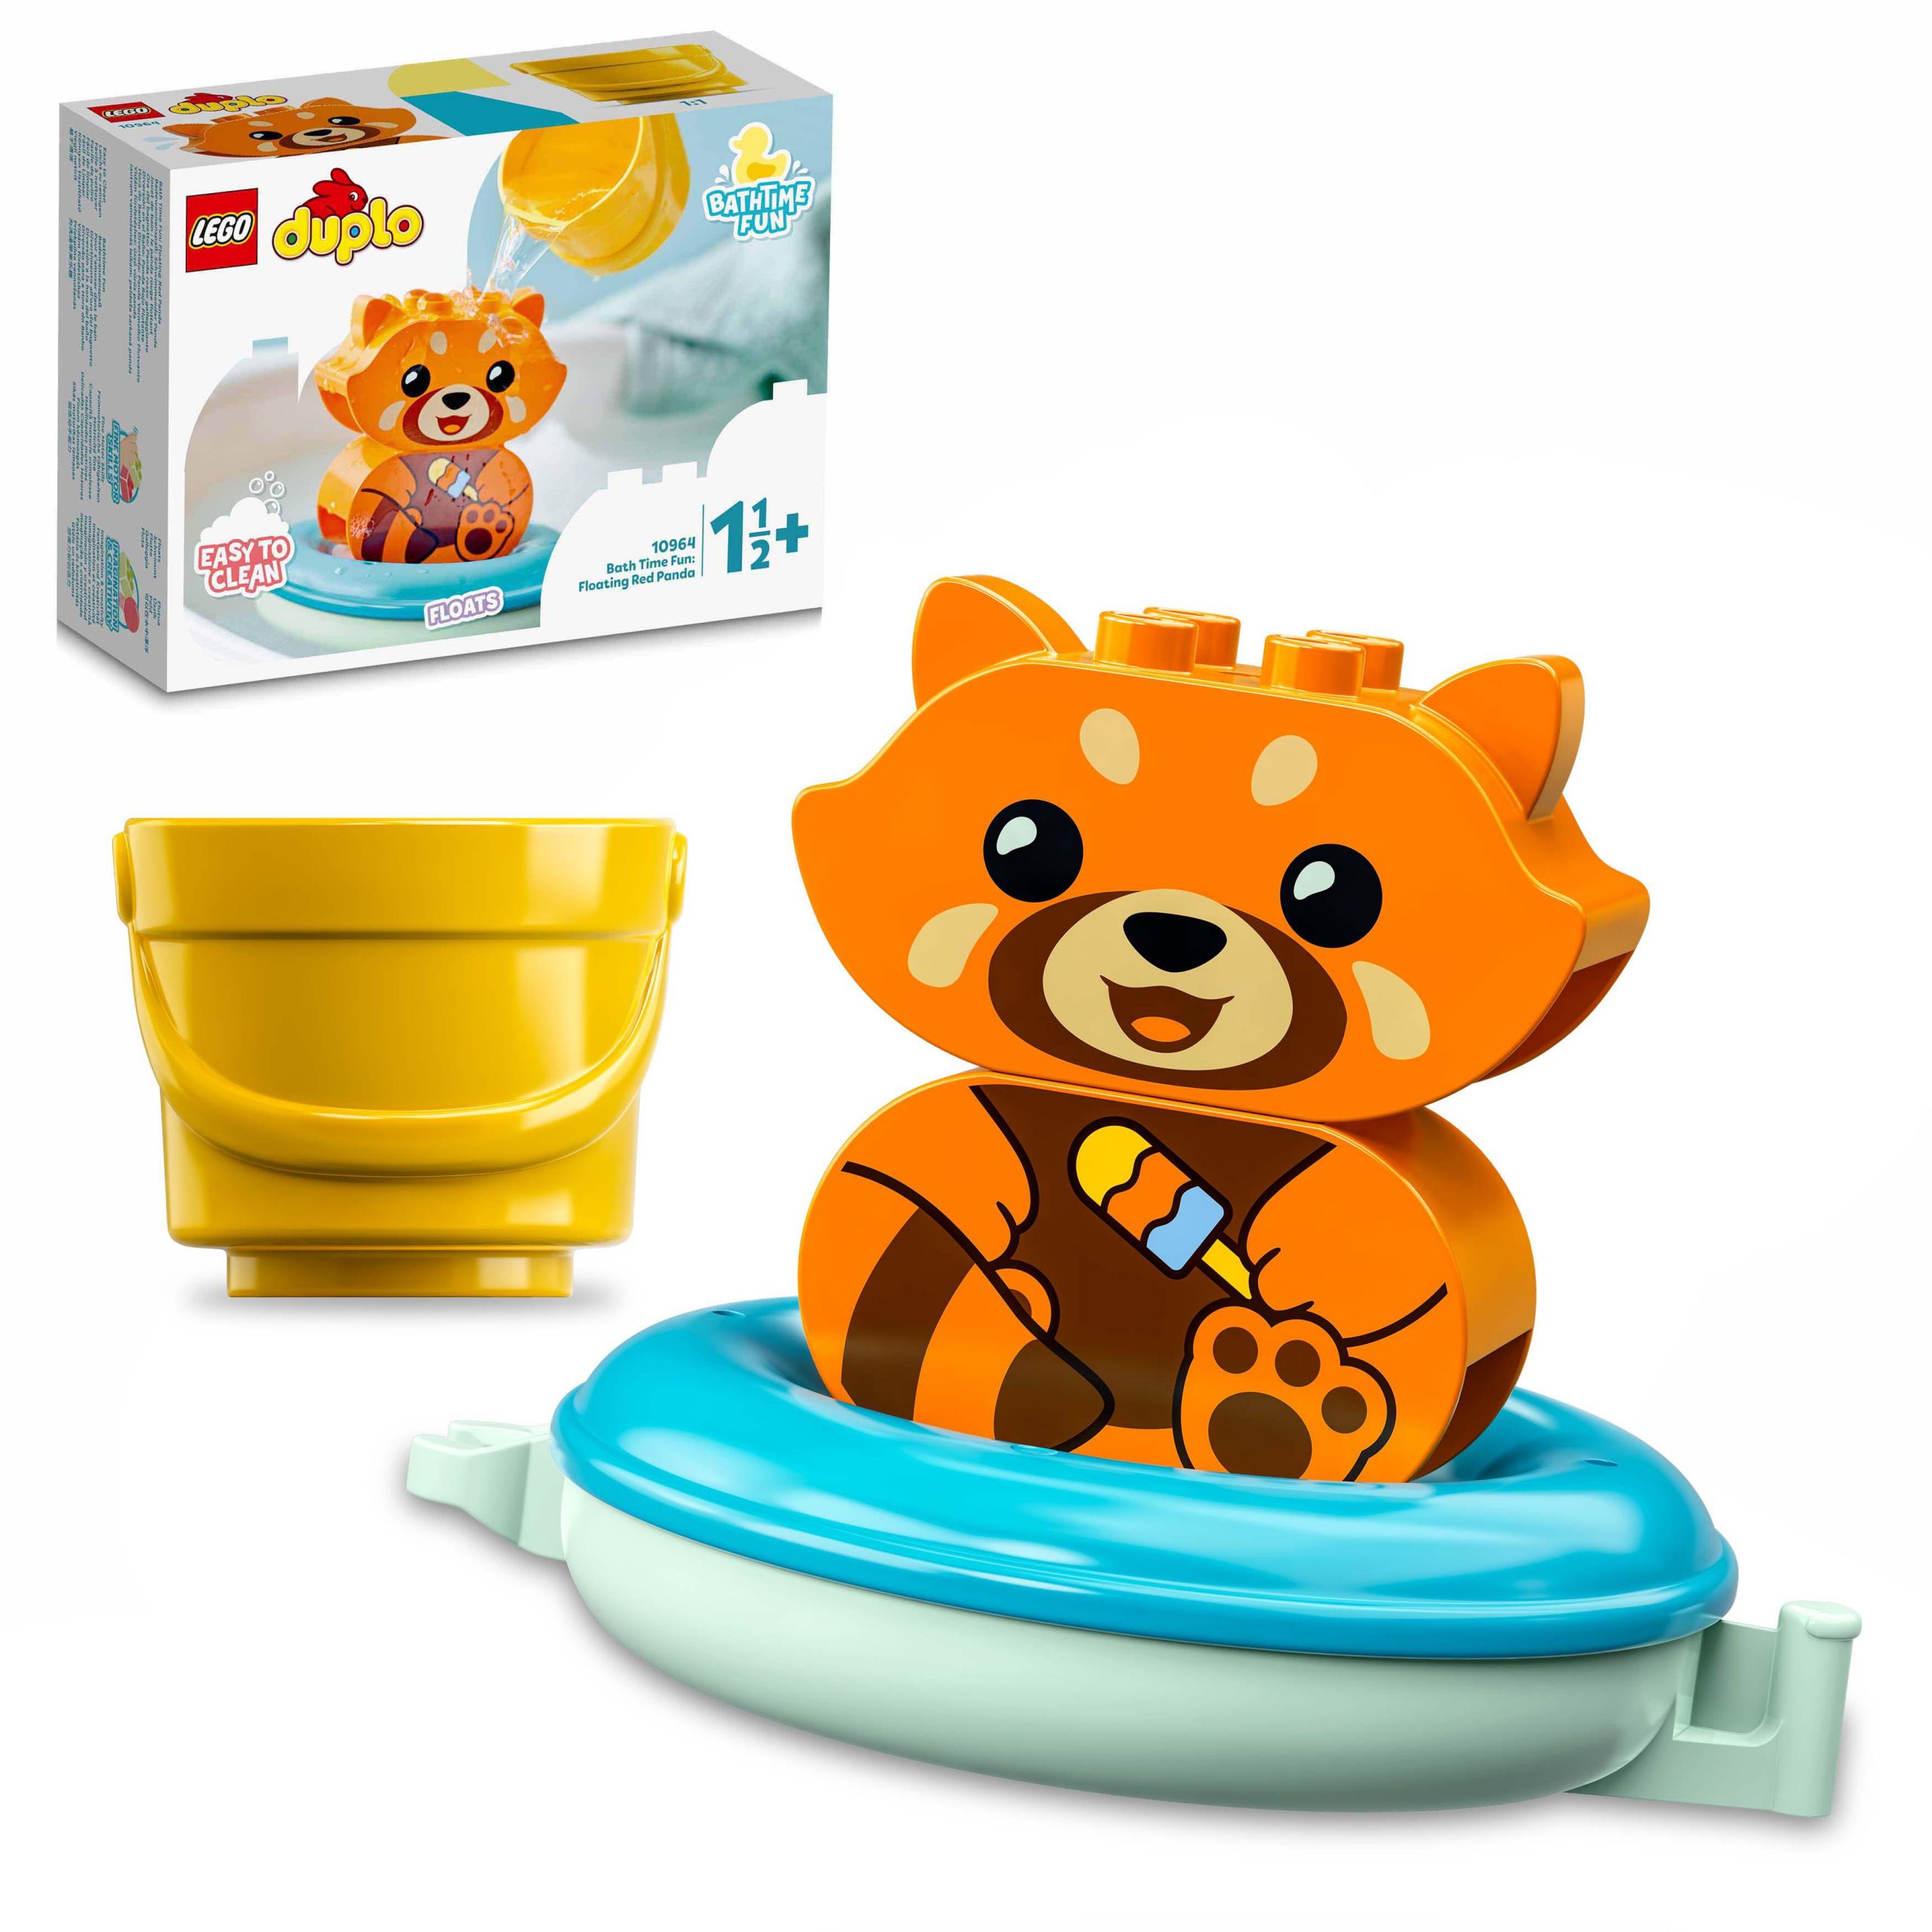 Lego duplo ora del bagnetto: panda rosso galleggiante, giochi per vasca da bagno, per bambini da 1 anno e 1/2, 10964 - LEGO DUPLO, Lego